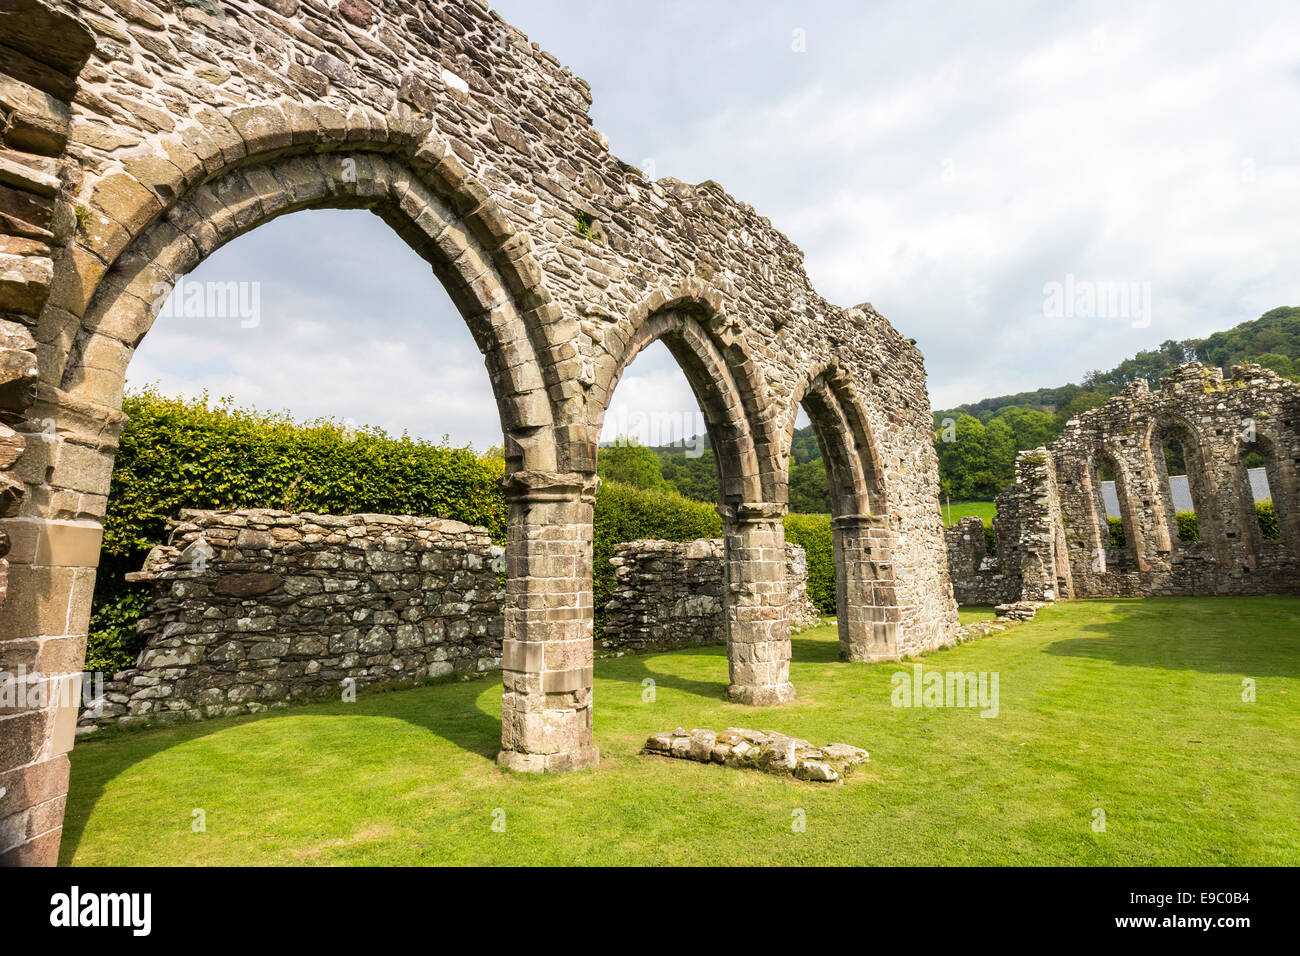 Cymer Abbey Gwynedd Wales UK Stock Photo